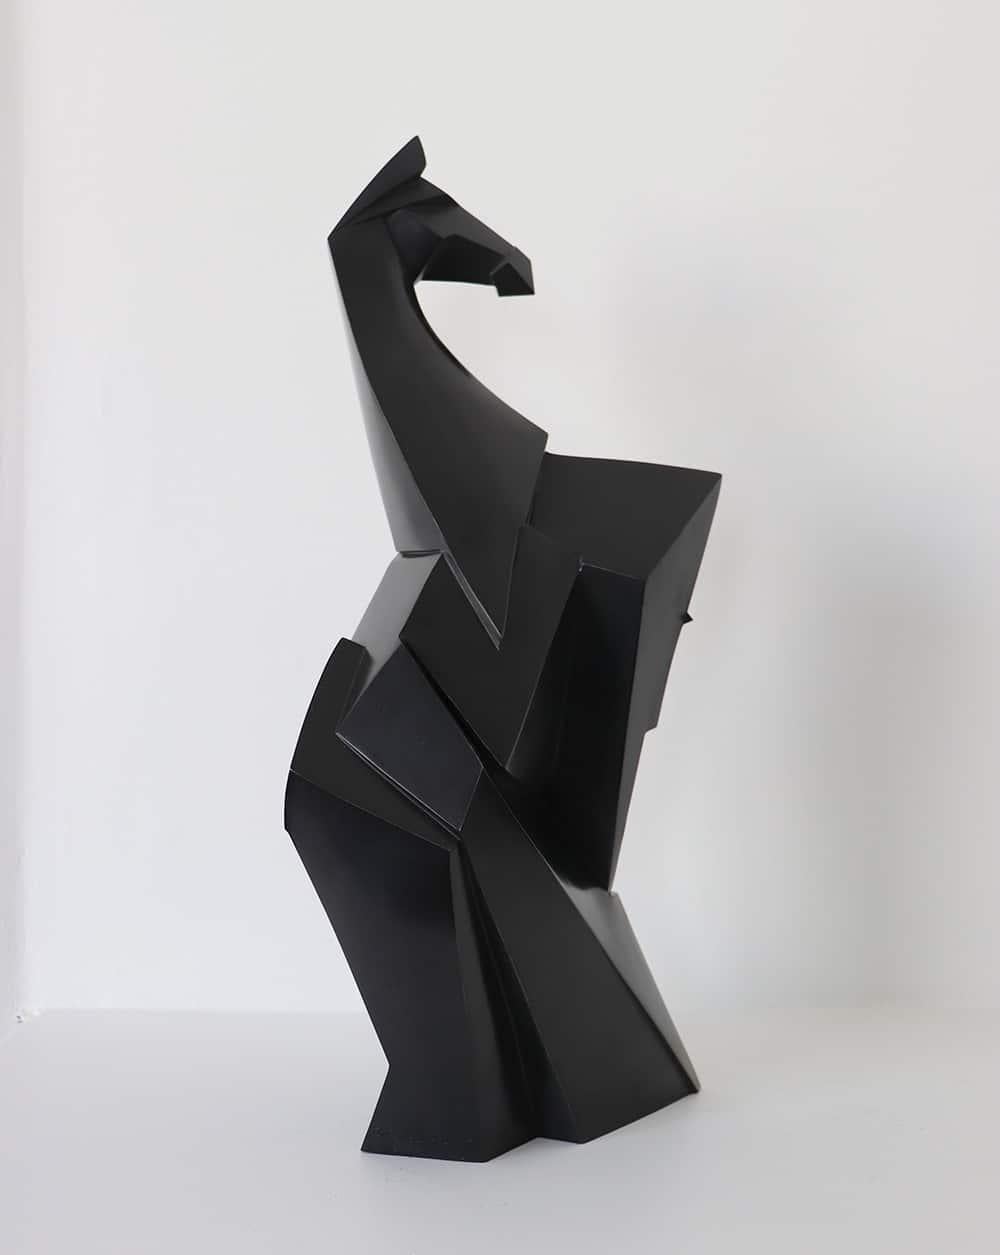 Kionero ist eine Bronzeskulptur des zeitgenössischen Künstlers Jacques Owczarek mit den Maßen 48 × 28 × 16,5 cm (18,9 × 11 × 6,5 Zoll). 
Die Skulptur ist signiert und nummeriert, gehört zu einer limitierten Auflage von 8 Exemplaren + 4